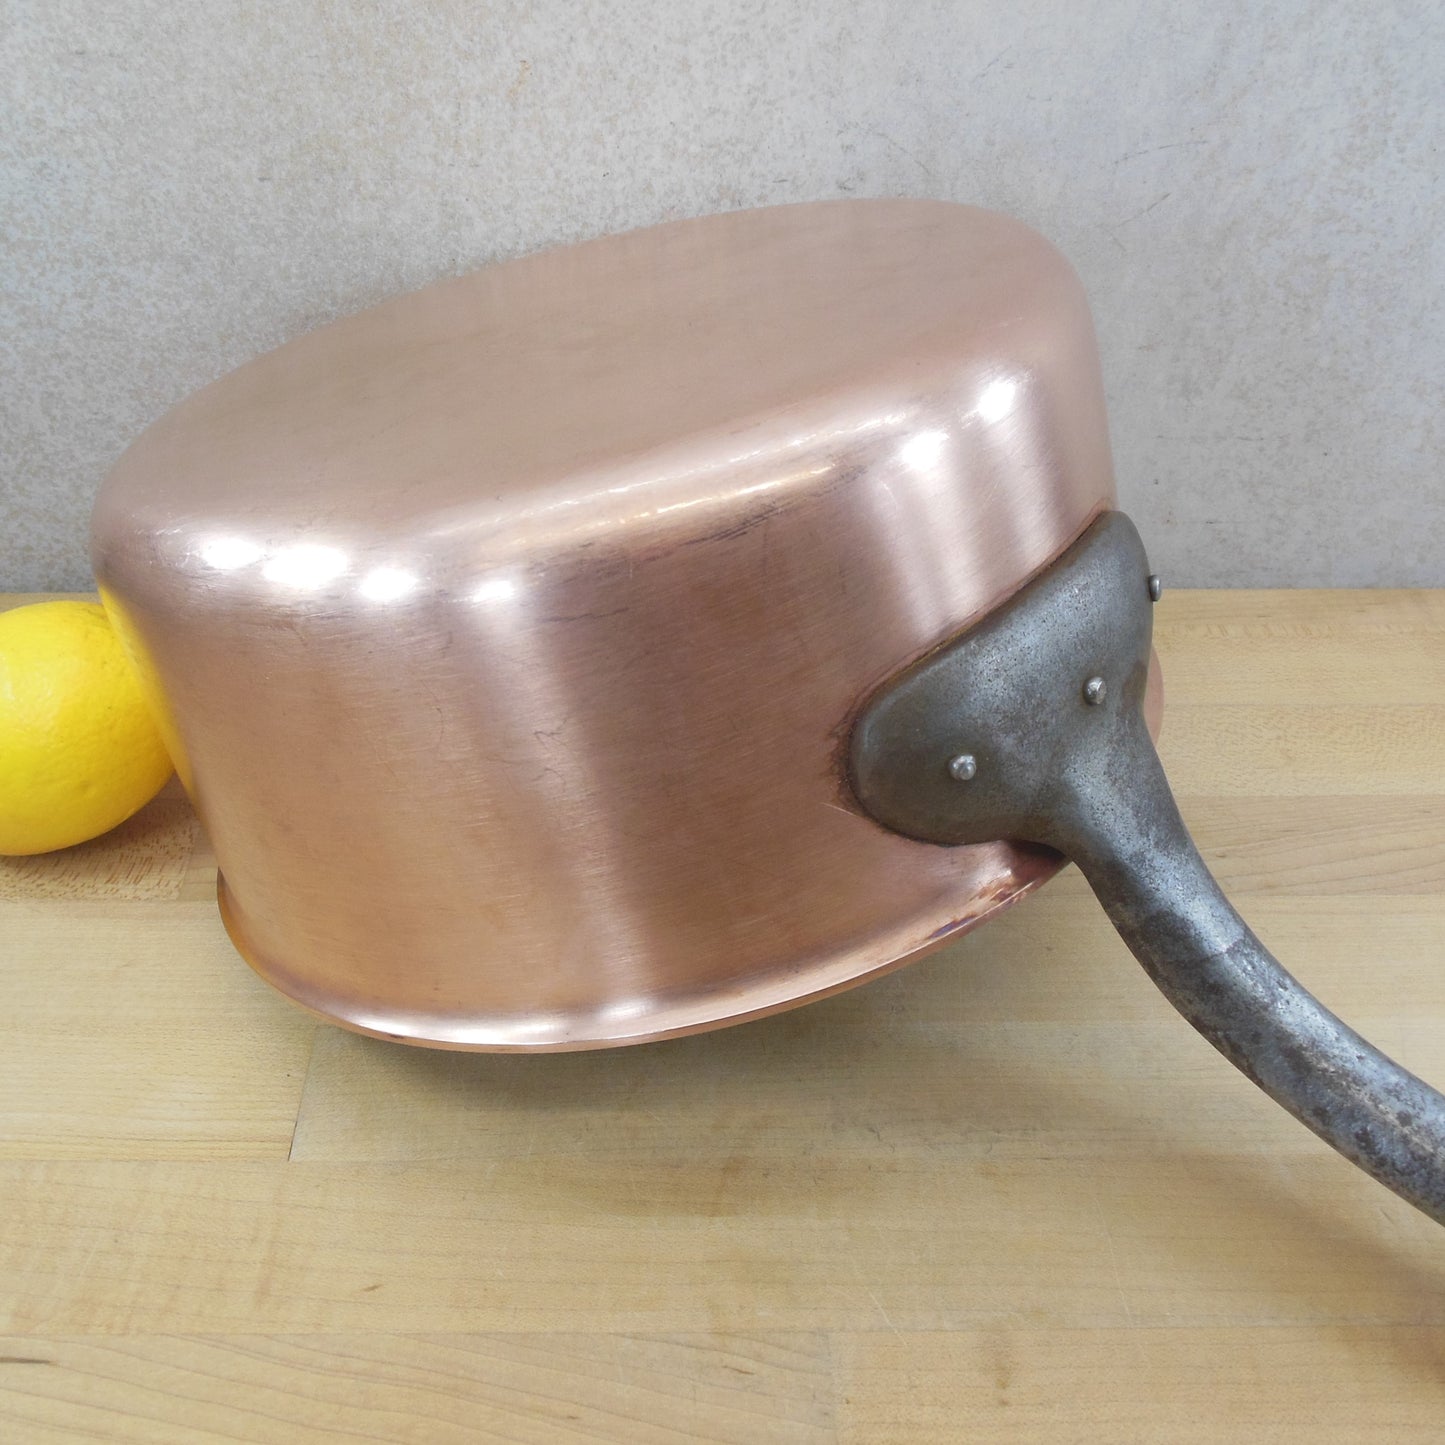 Falk Culinair Belgium 24cm Classic Copper Stainless Saucepan 4.9 Quart iron handle